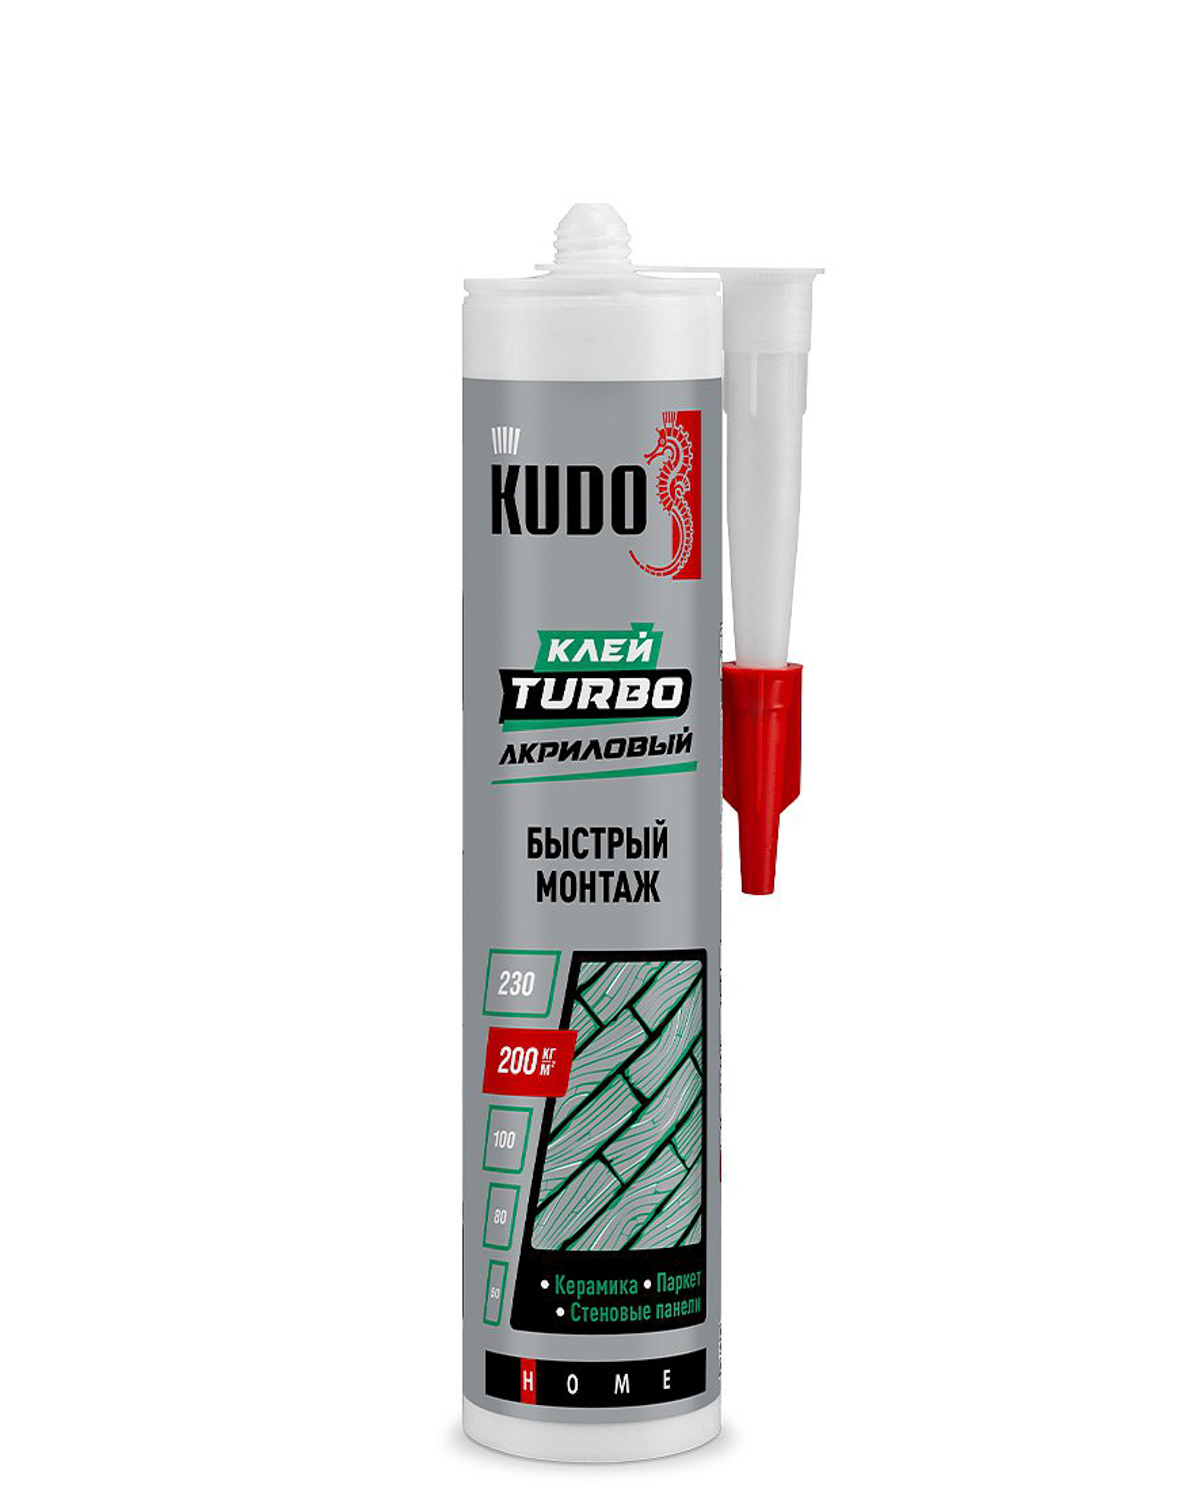 Клей Kudo Turbo для быстрого монтажа универсальный белый KBK-331 280 мл универсальный профессиональный клей пена kudo